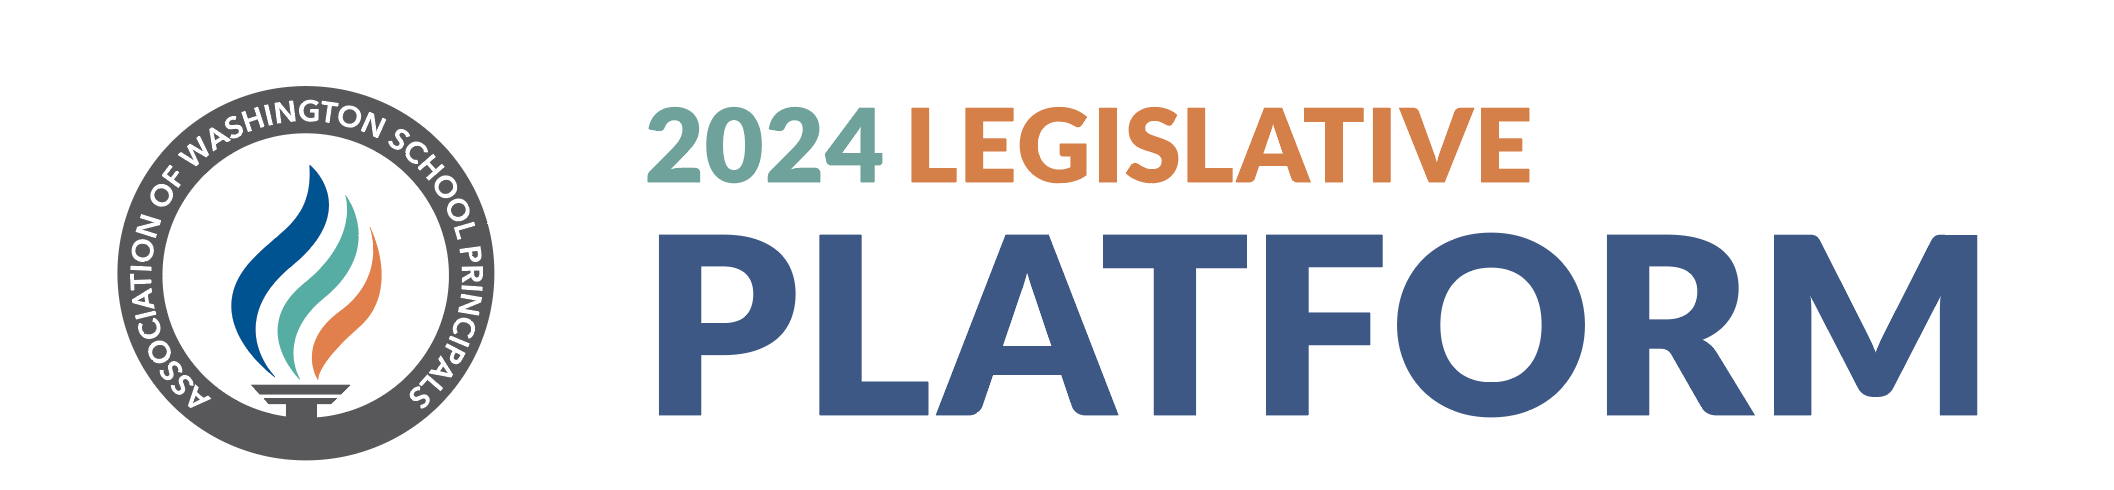 2024 Legislative Platform header